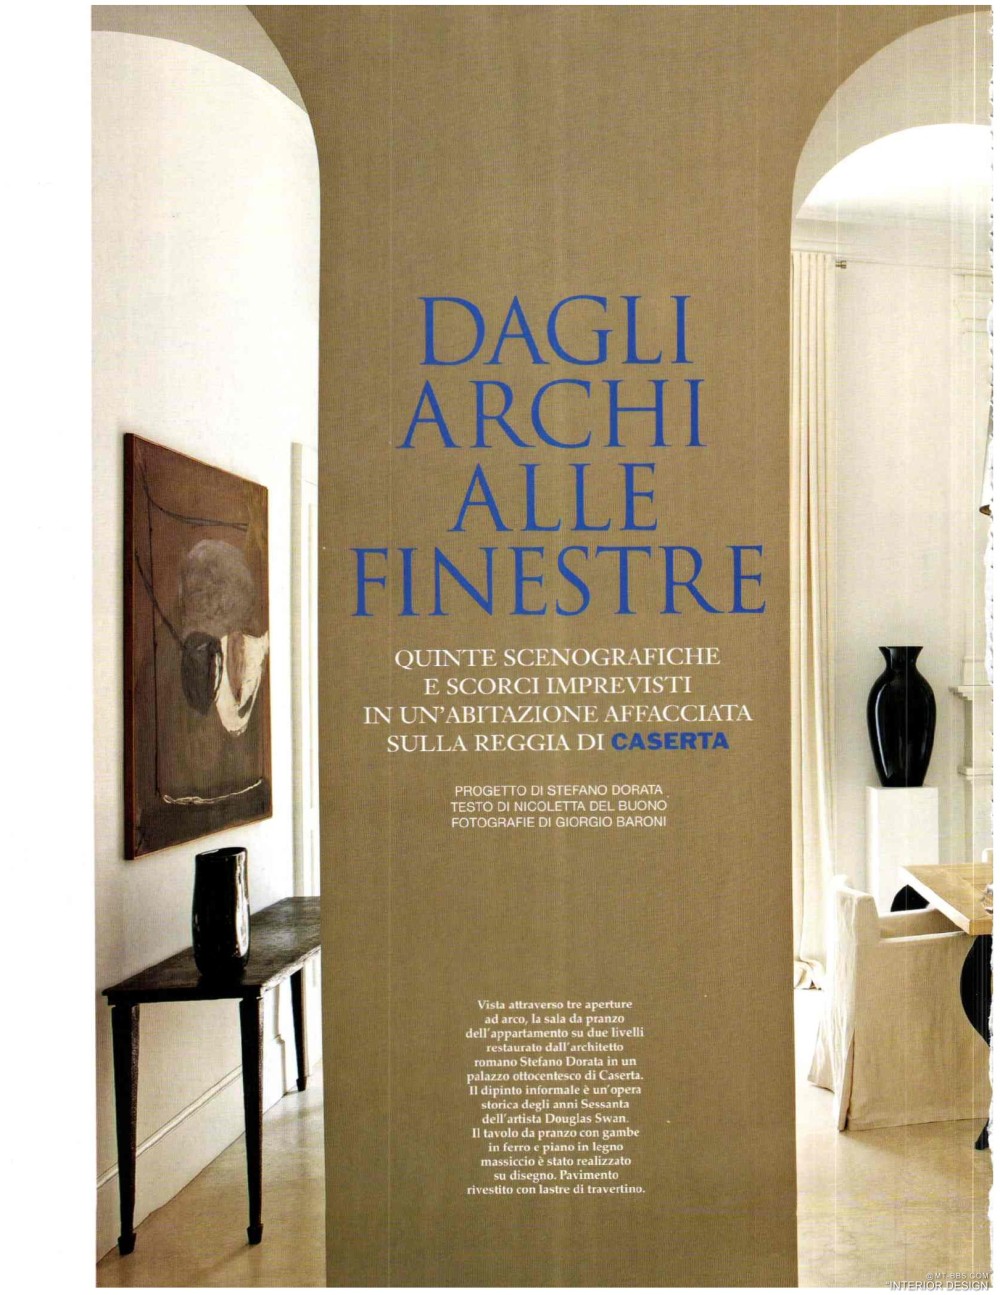 意大利AD 杂志 2012年全年JPG高清版本 全免（上传完毕）_0170.jpg